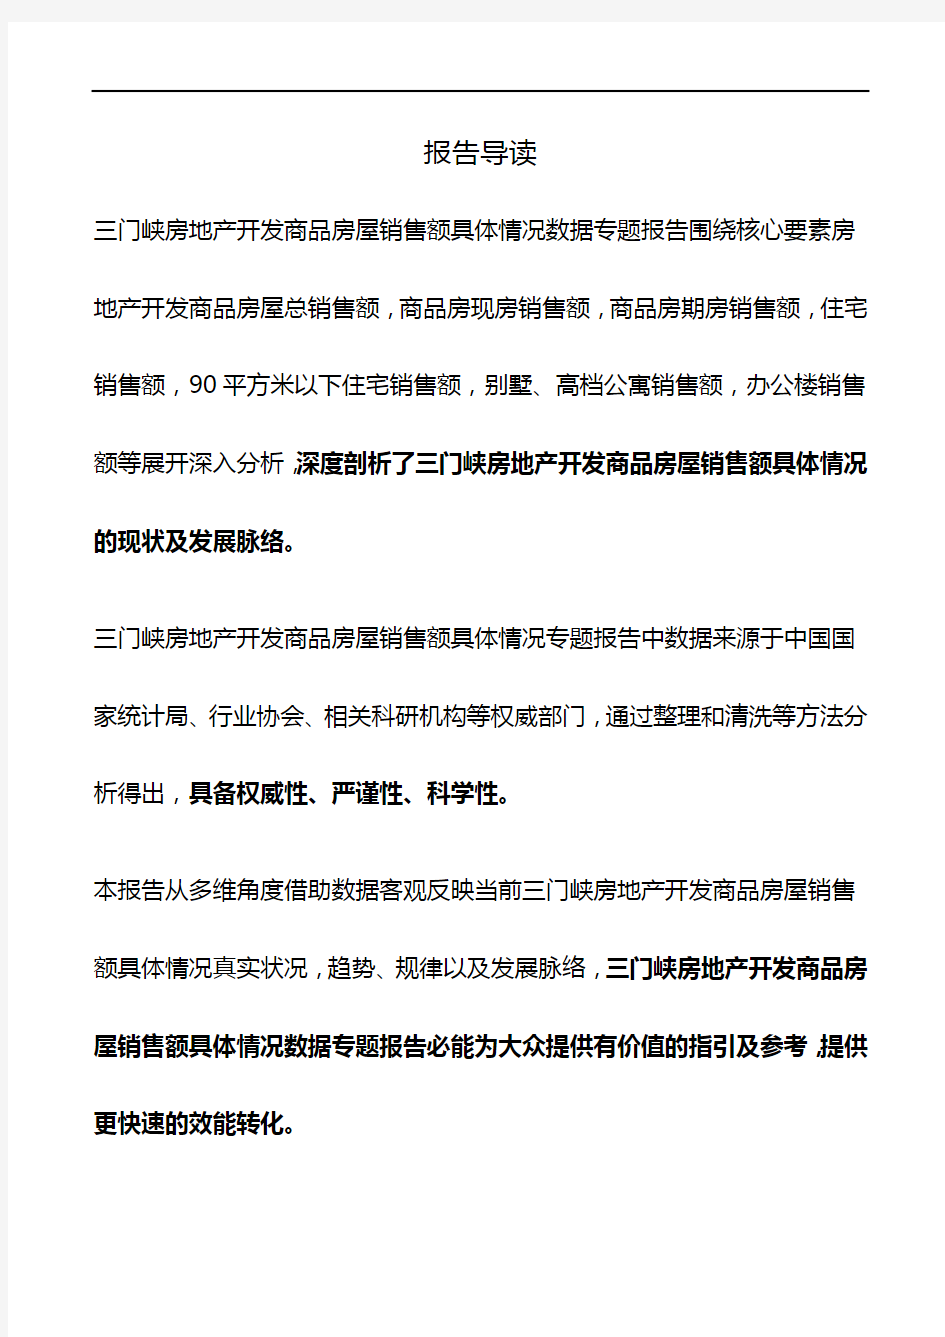 河南省三门峡房地产开发商品房屋销售额具体情况数据专题报告2019版